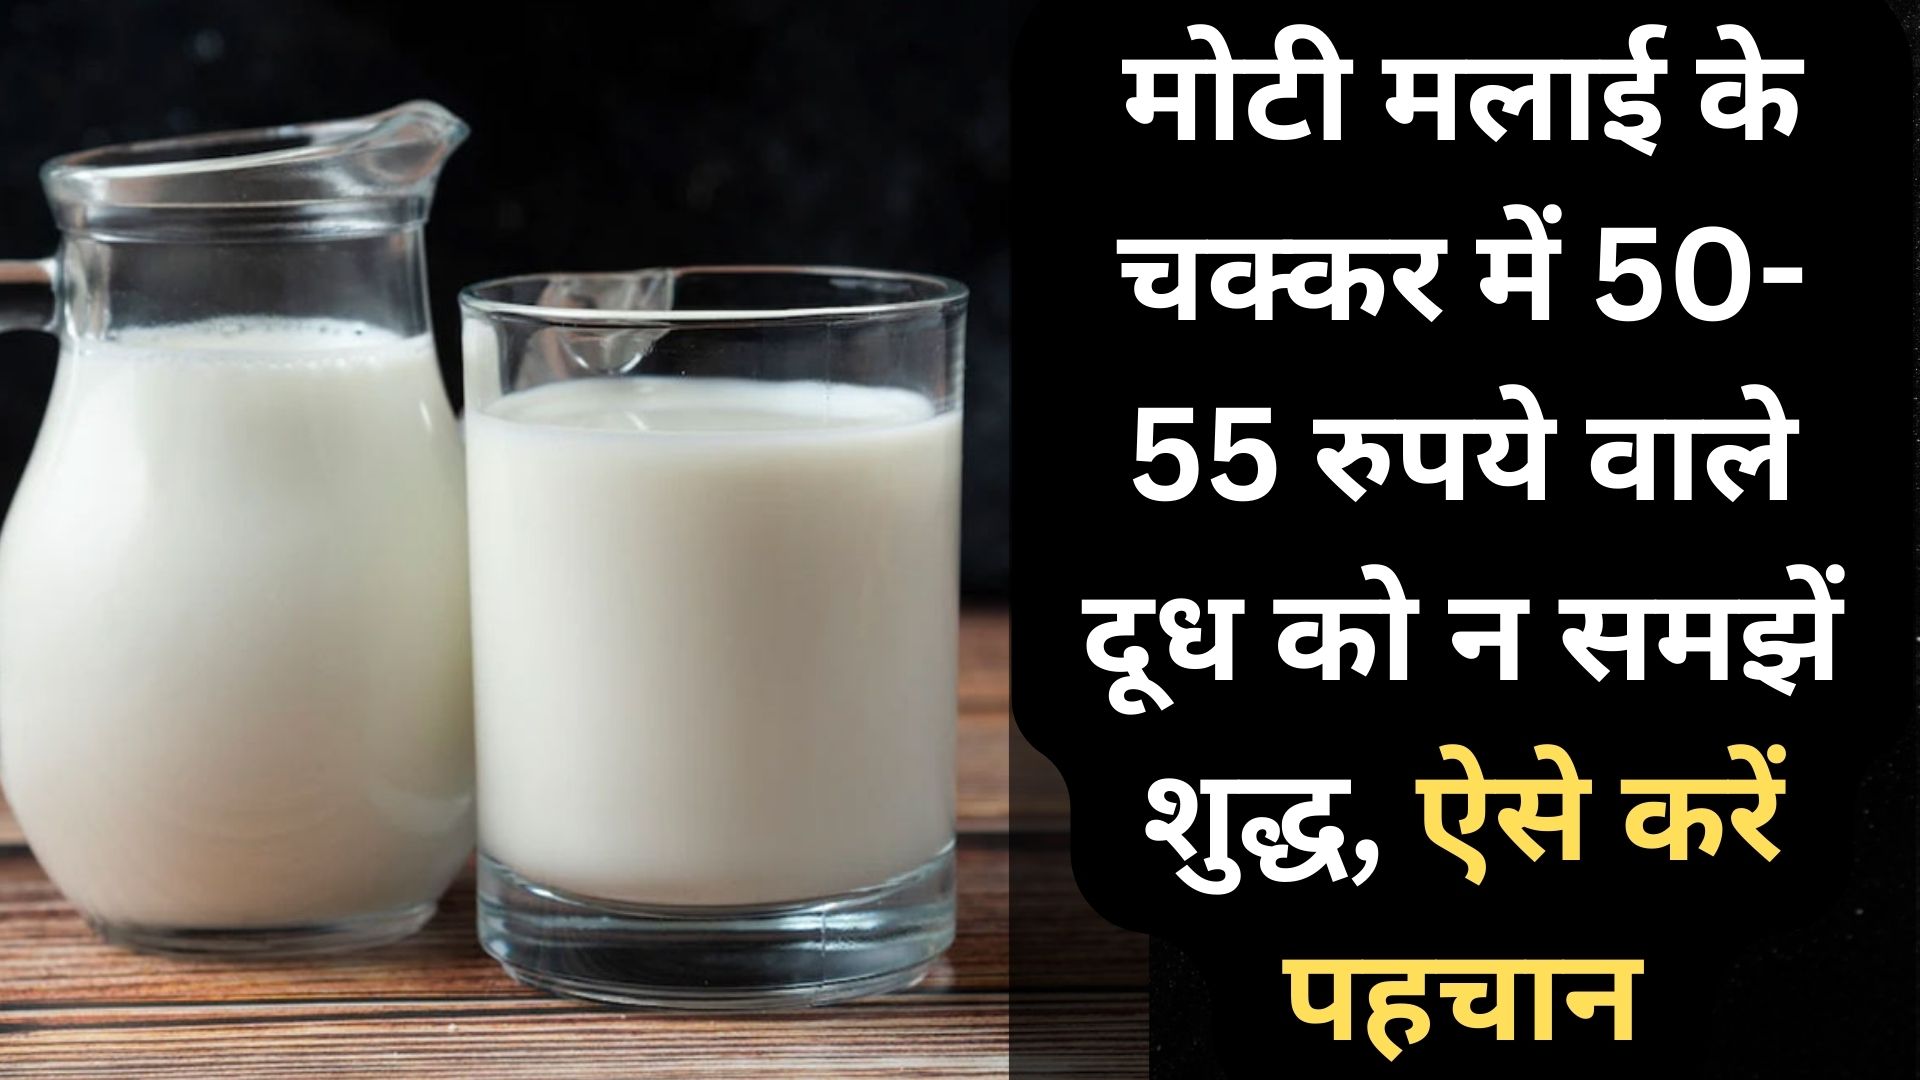 बरेली: मोटी मलाई के चक्कर में 50-55 रुपये वाले दूध को न समझें शुद्ध, ऐसे करें पहचान